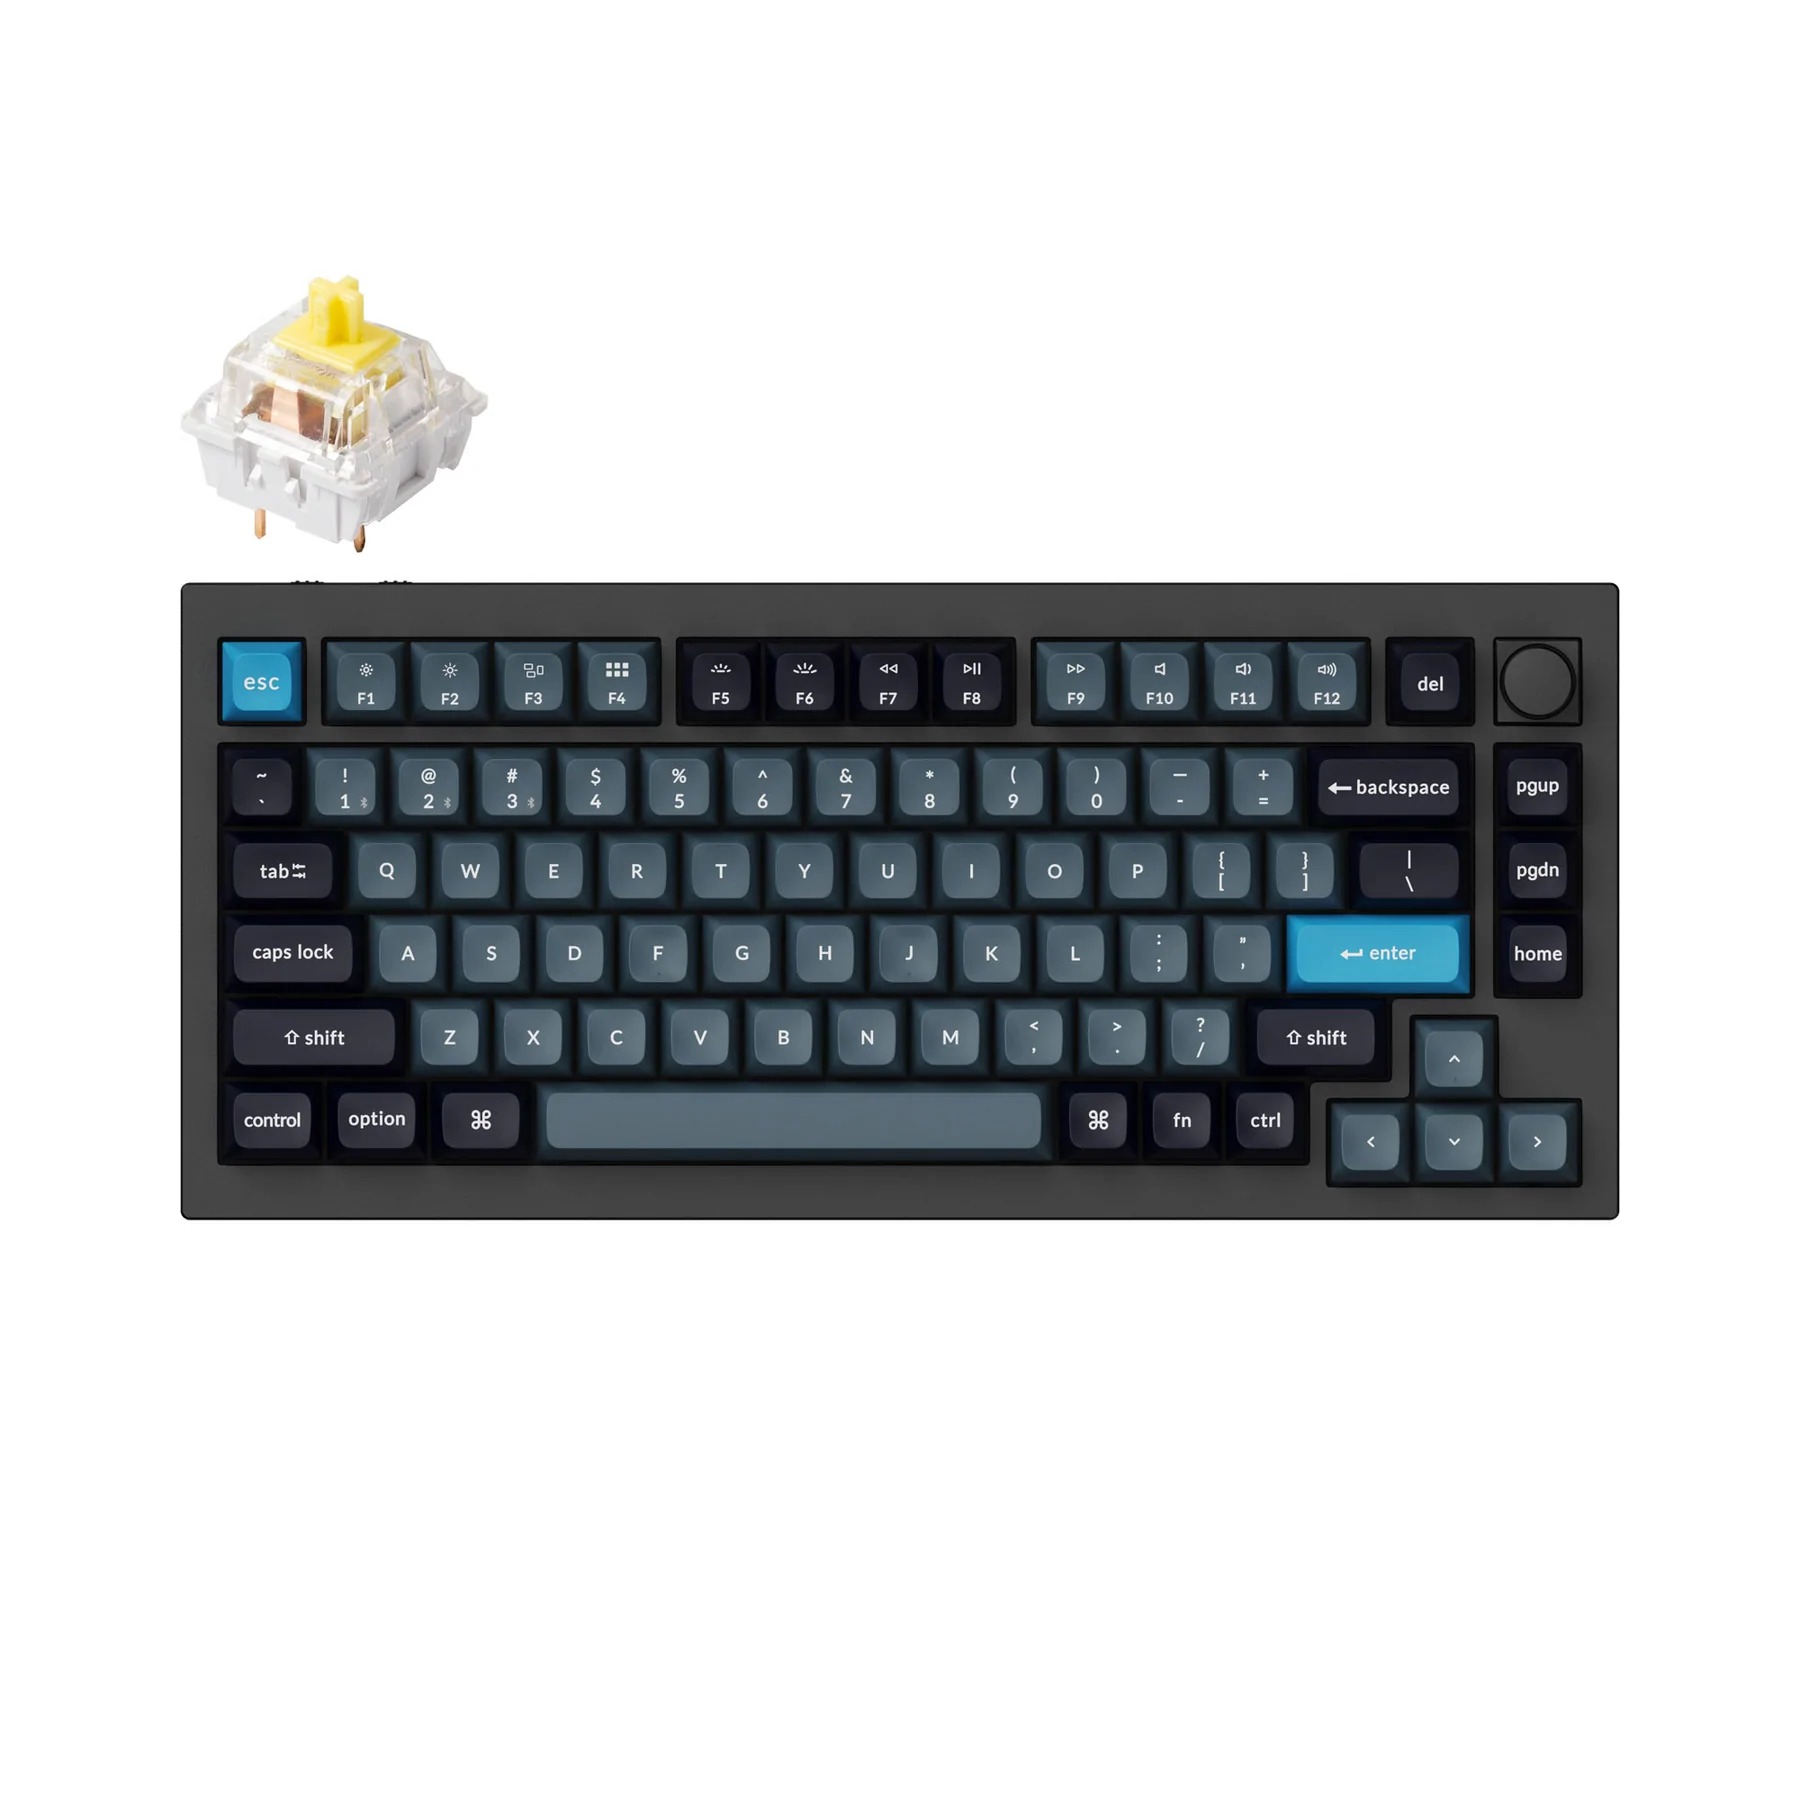 KeyCron Q1 Pro - El mejor teclado mecánico de alta gama